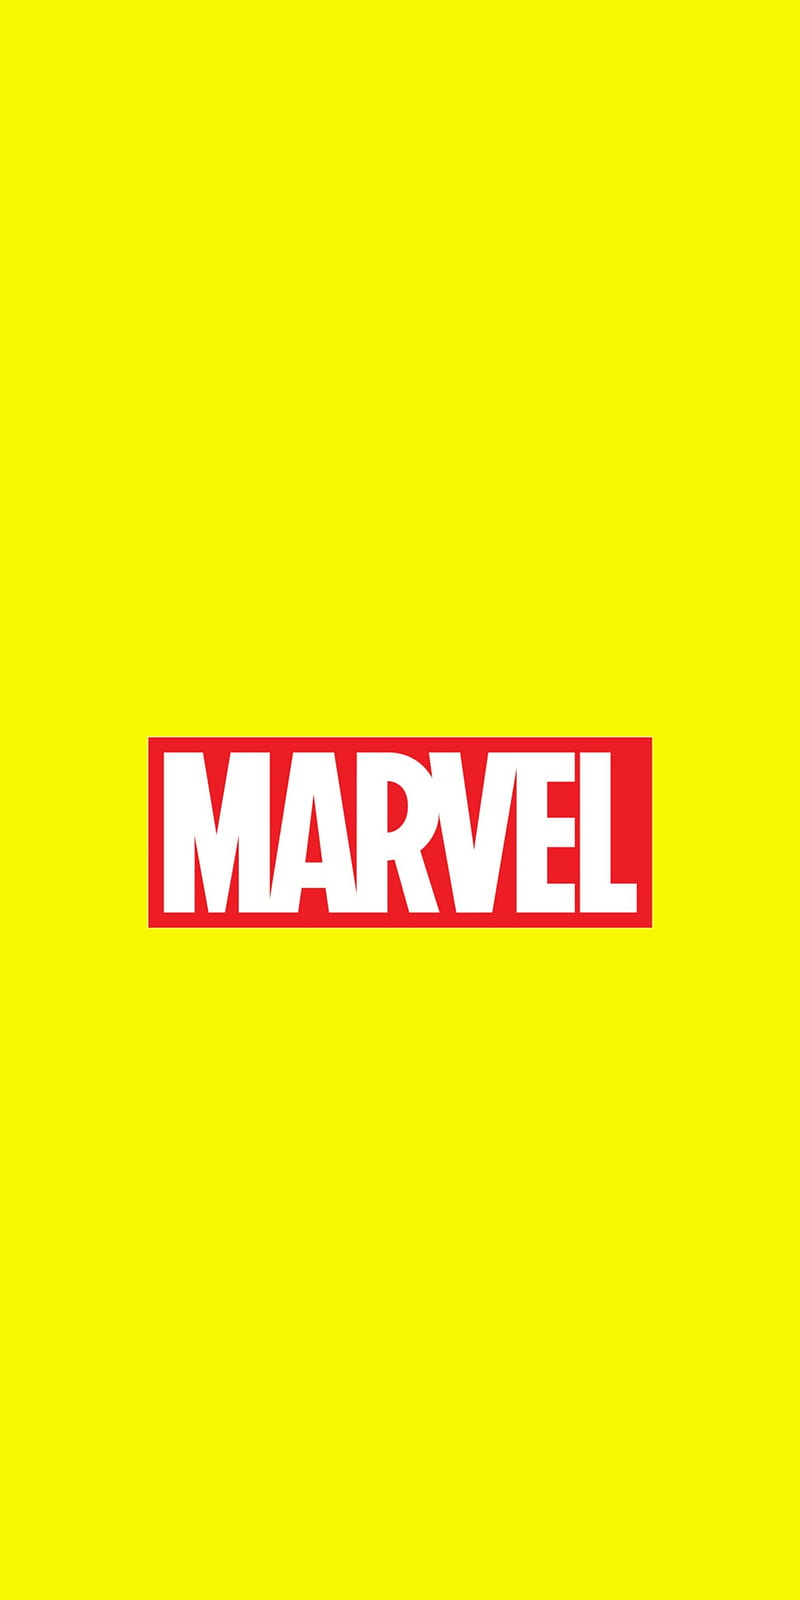 Marvel Fon Logo Hd Phone Wallpaper Peakpx